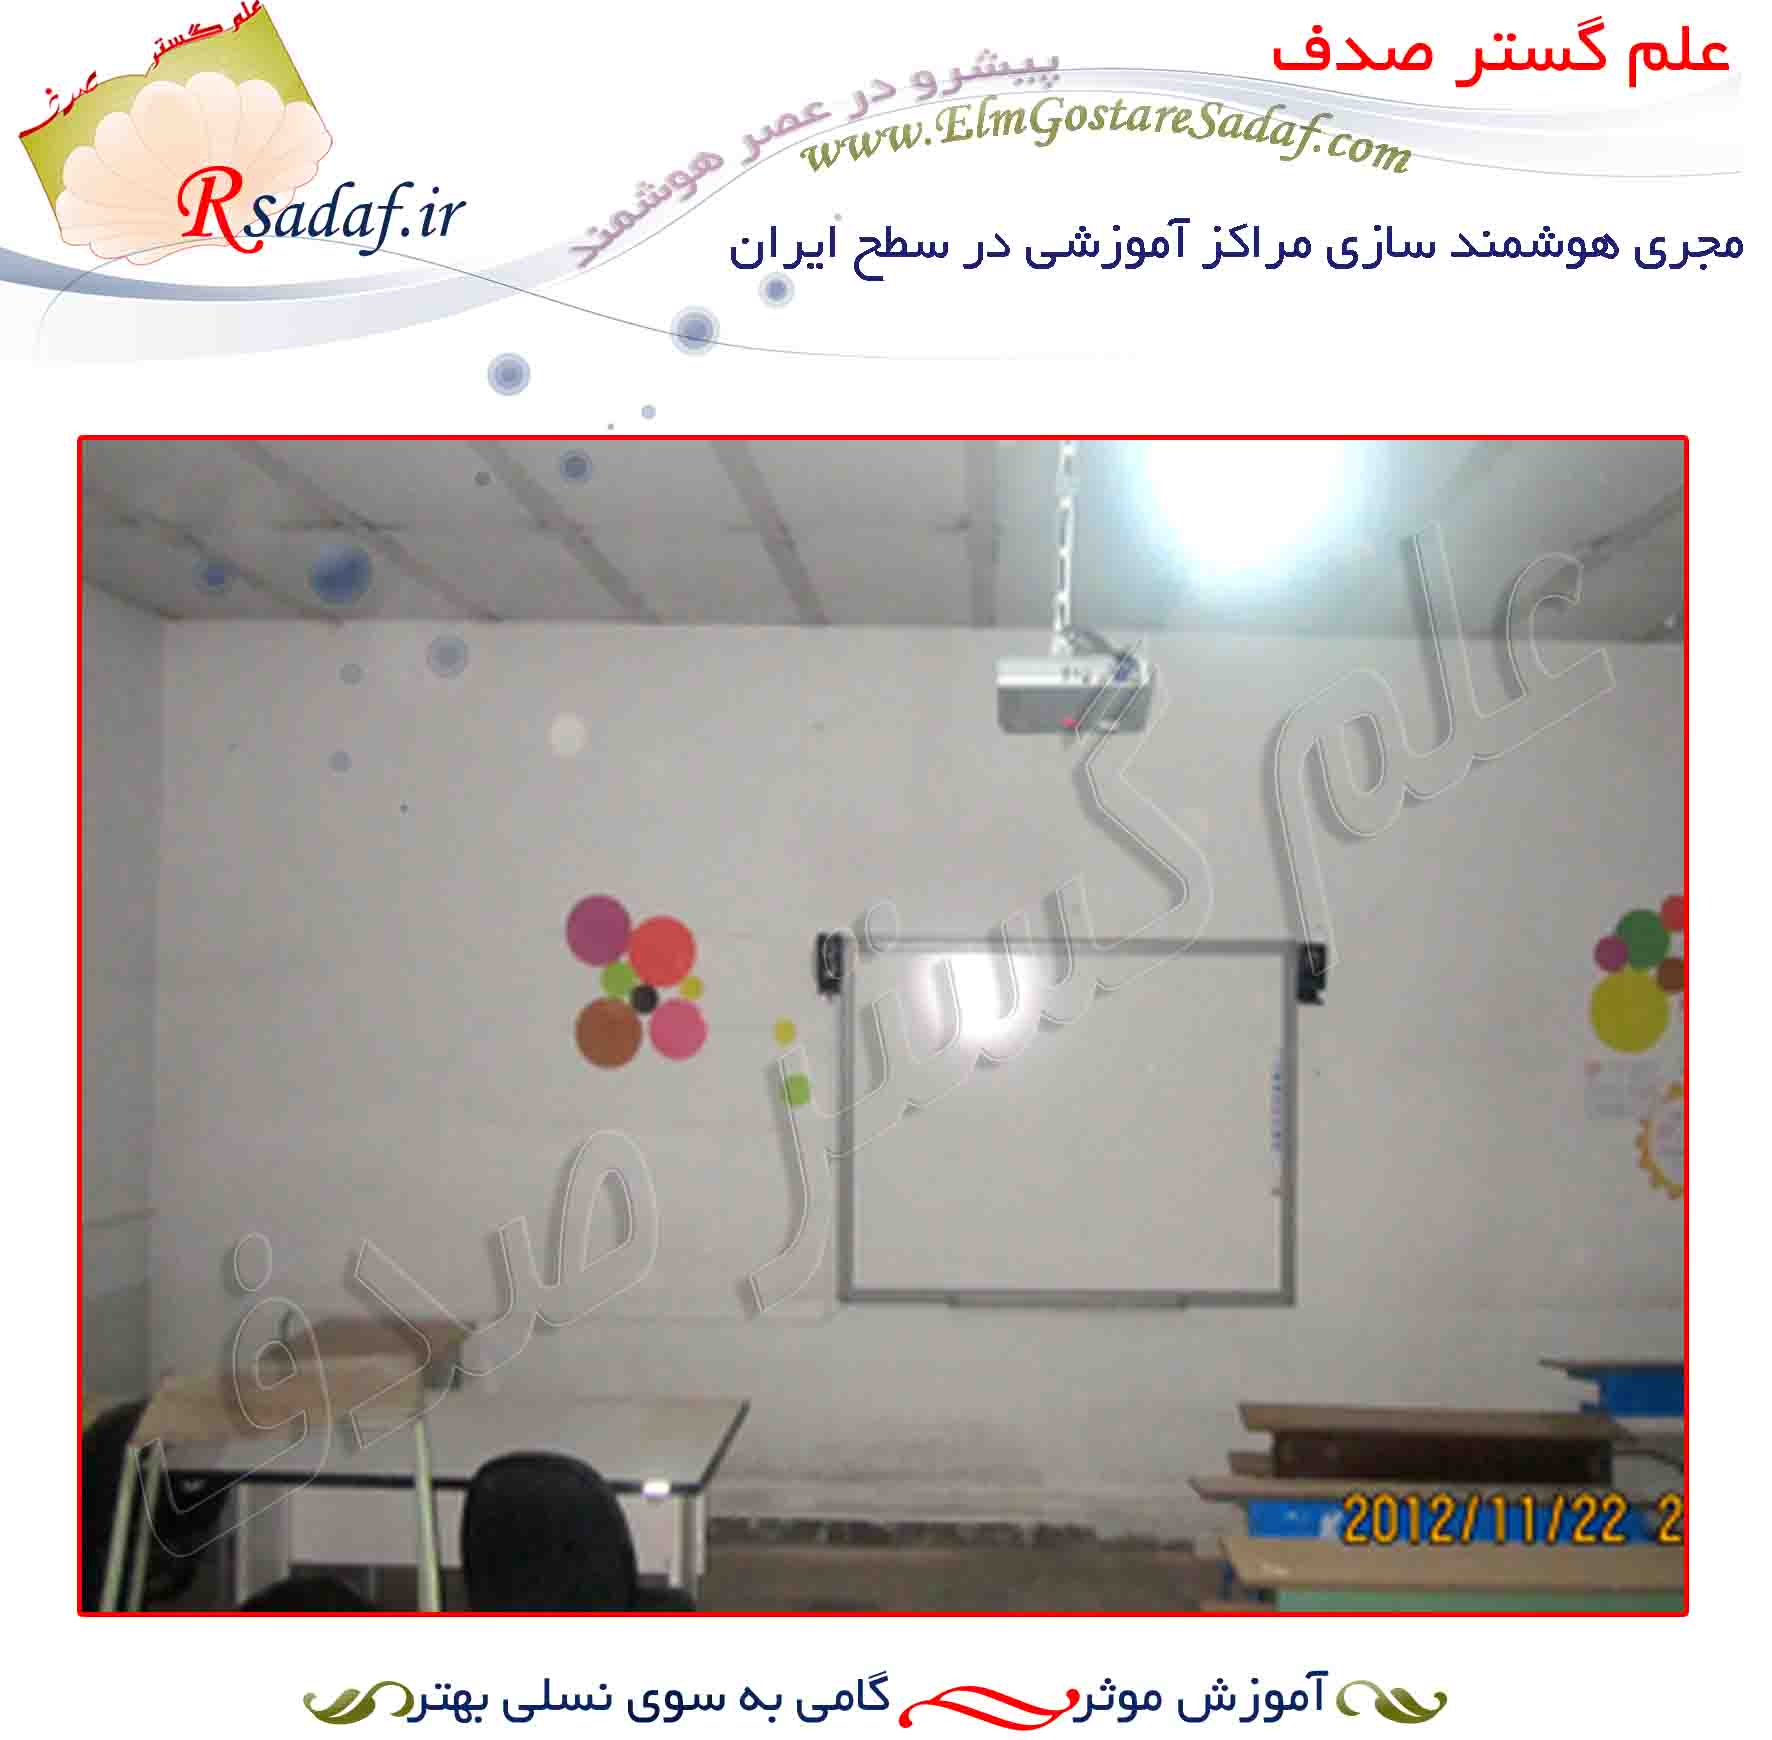  مدرسه شهيد زماني اشتهارد (استان البرز)